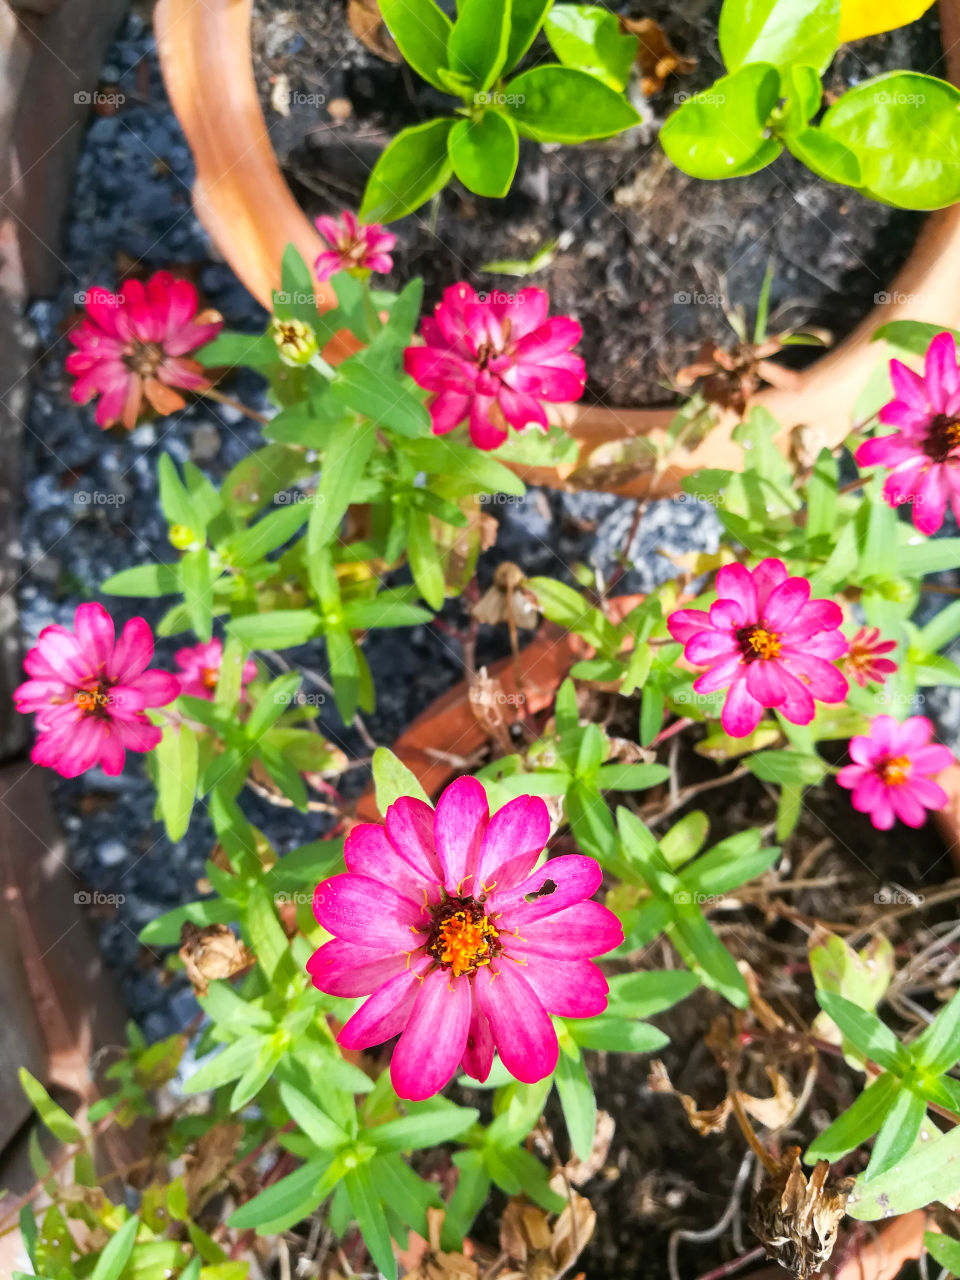 Pink flower in garden